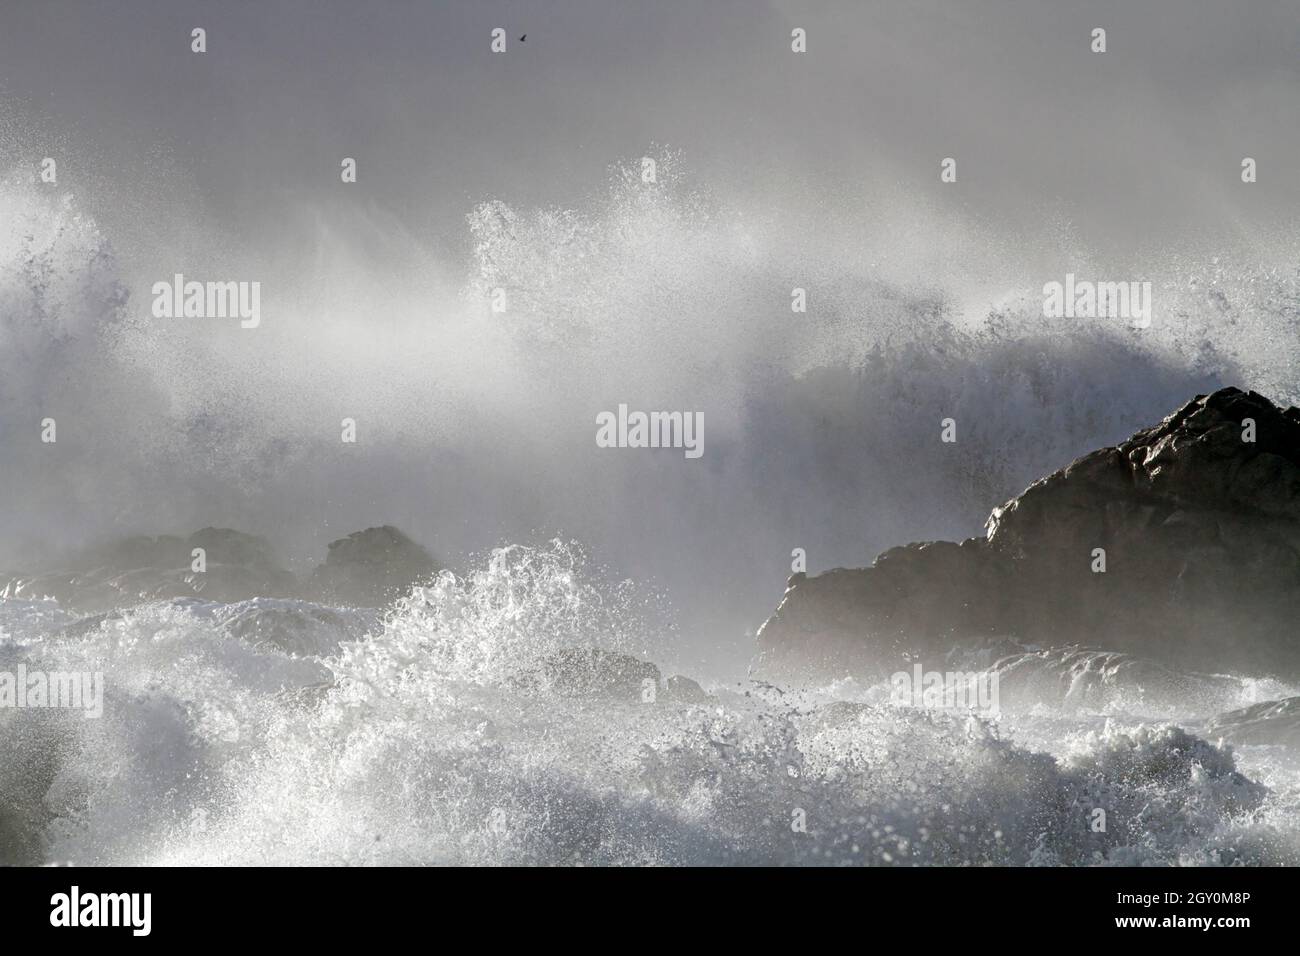 Sturm an der Küste seig große Welle brechen über Felsen Und Klippen sehen Spritzer und Spray Stockfoto